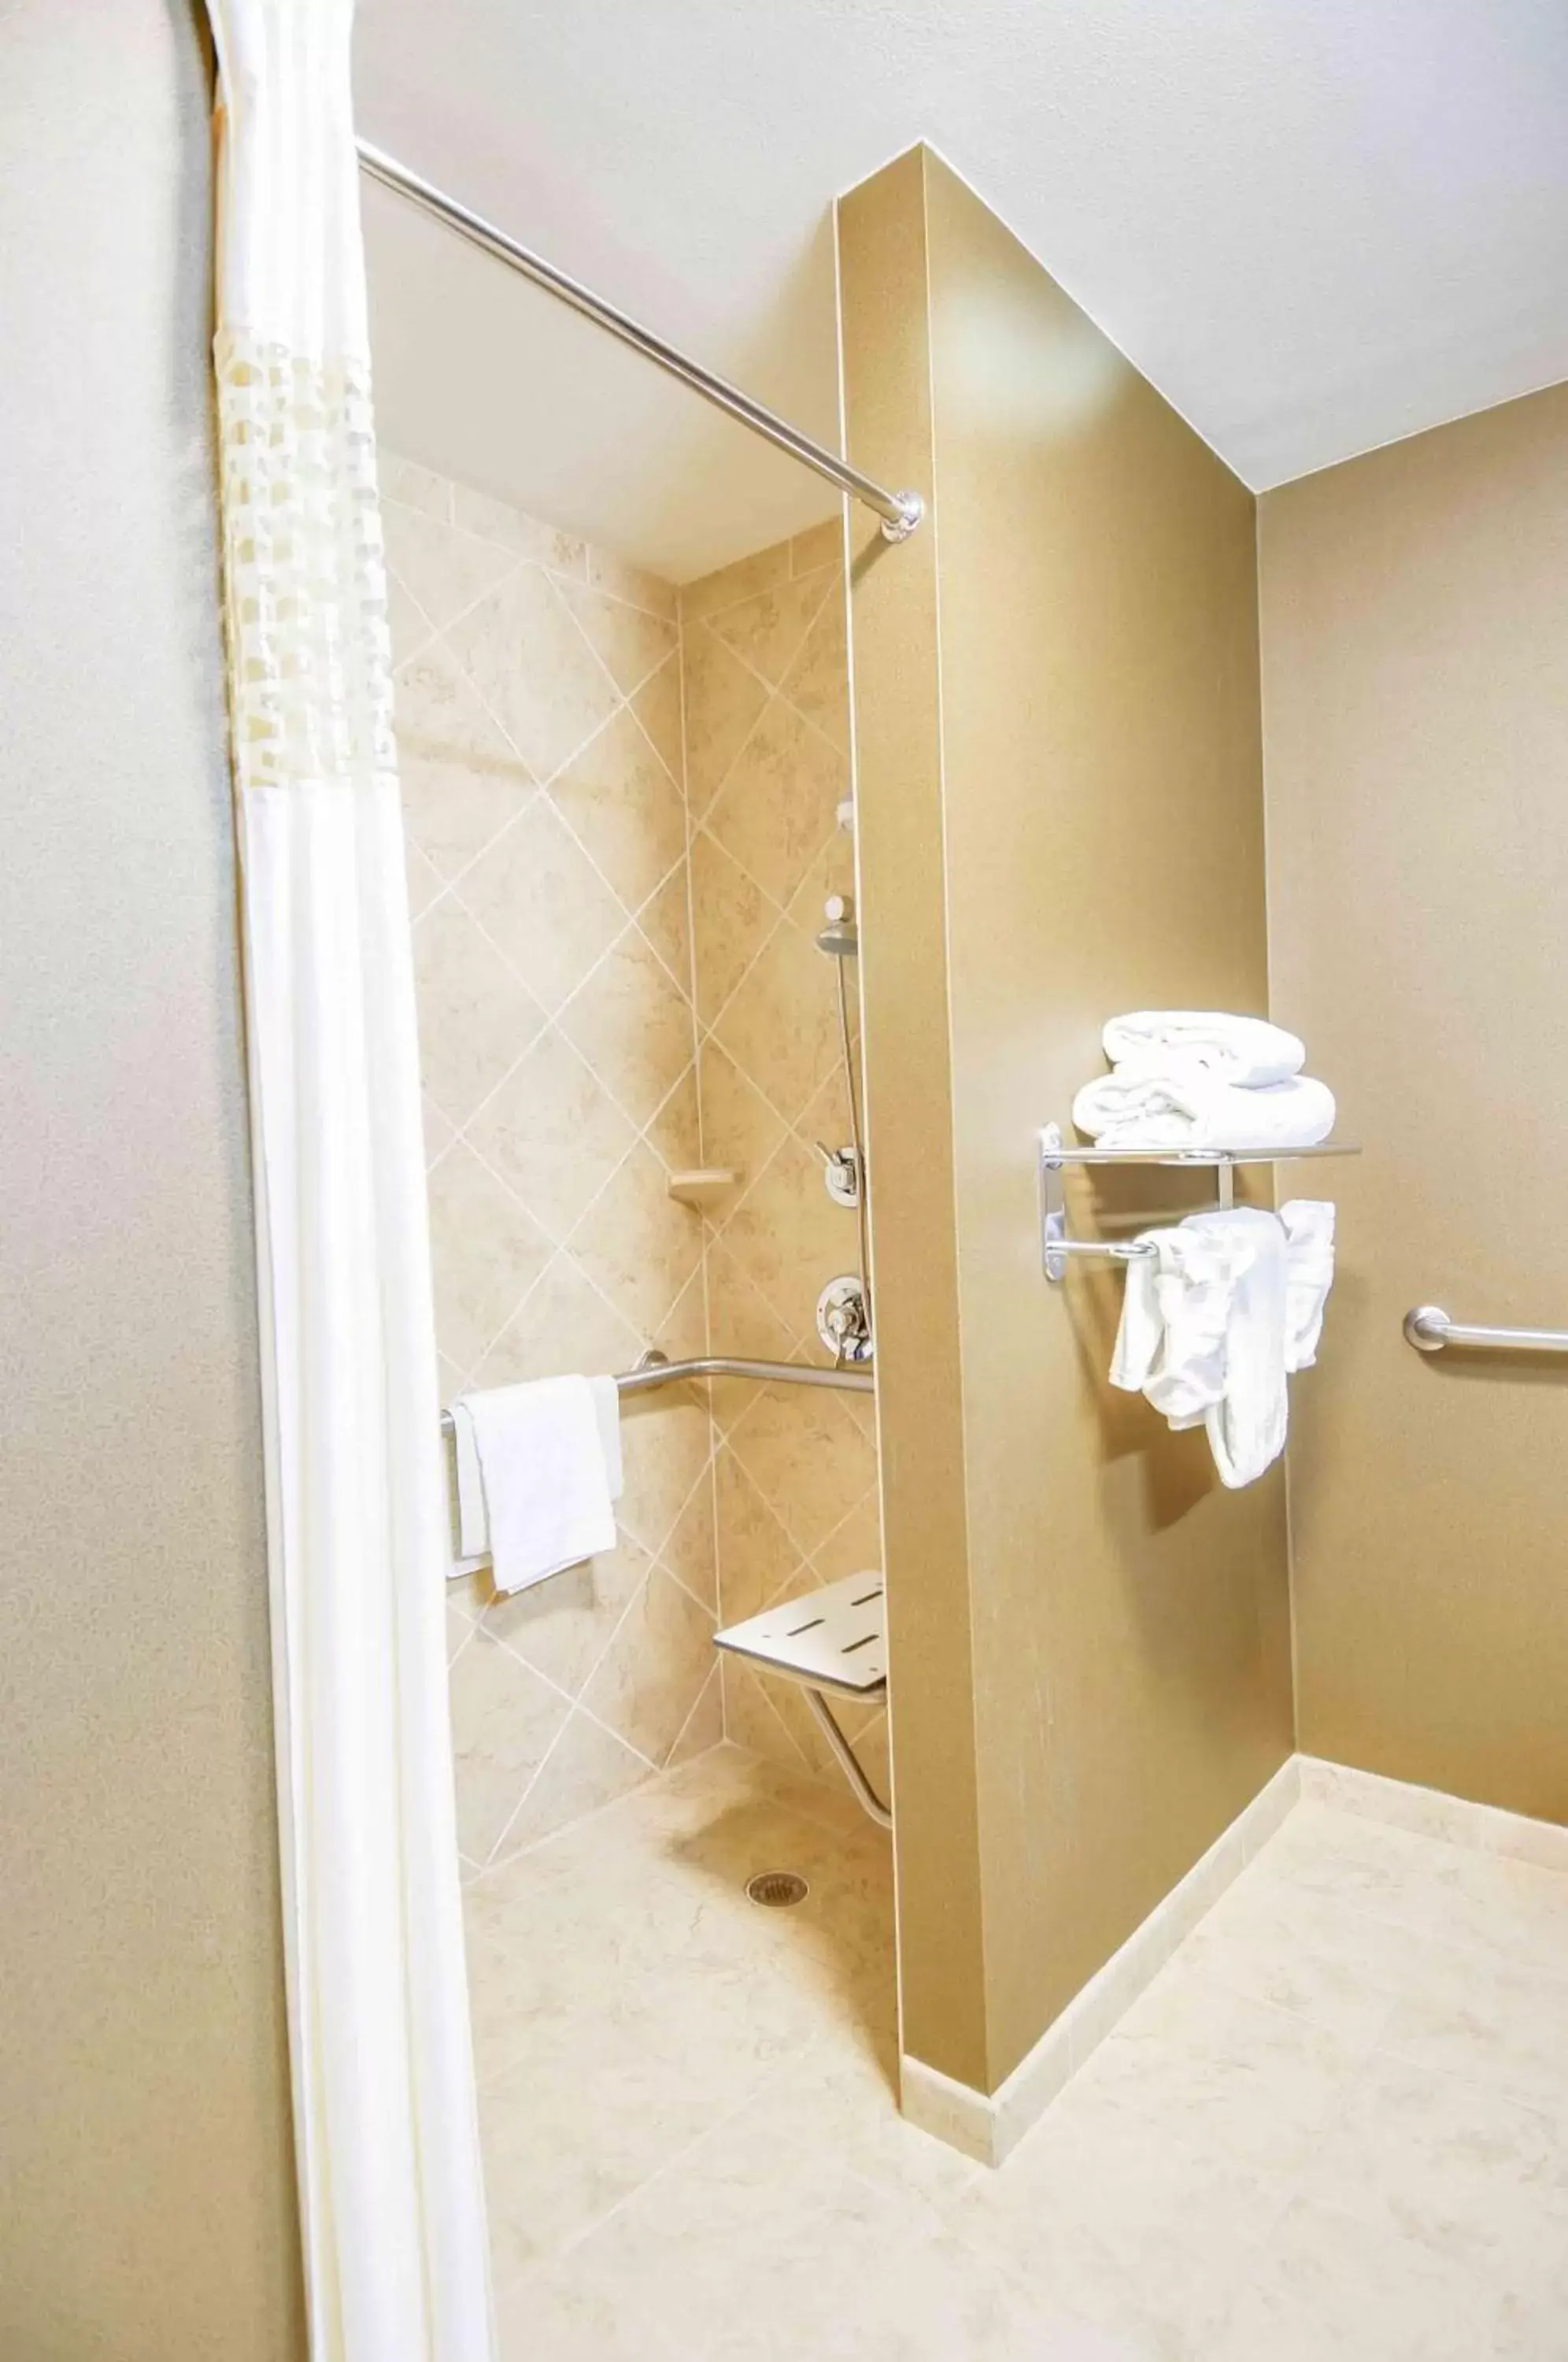 Bathroom in Hampton Inn & Suites Pinedale